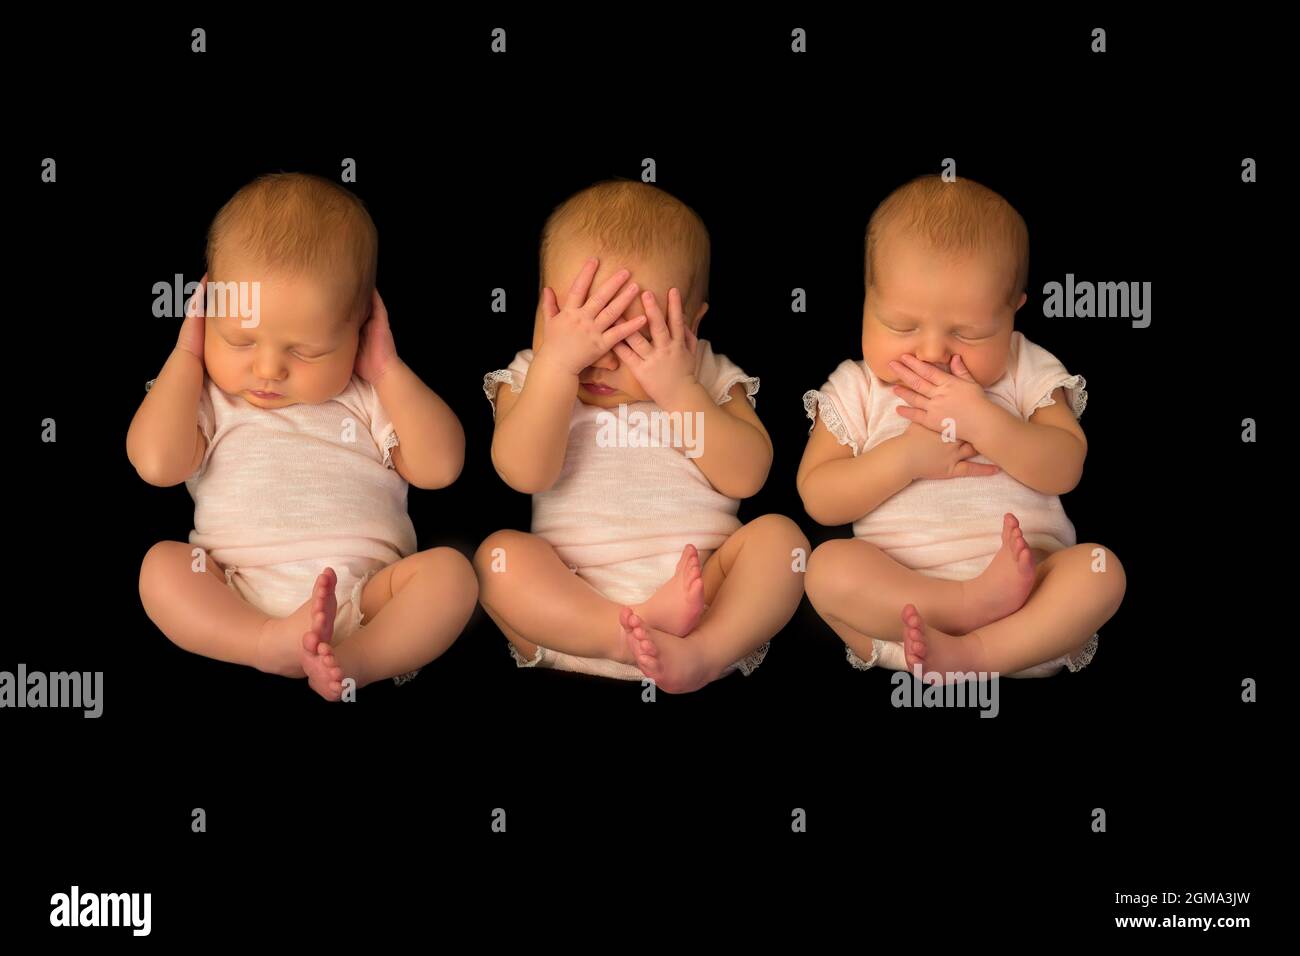 Ein Baby posiert dreimal, um dem Sprichwort zu zeigen, hören sehen, sprechen kein Böses Stockfoto